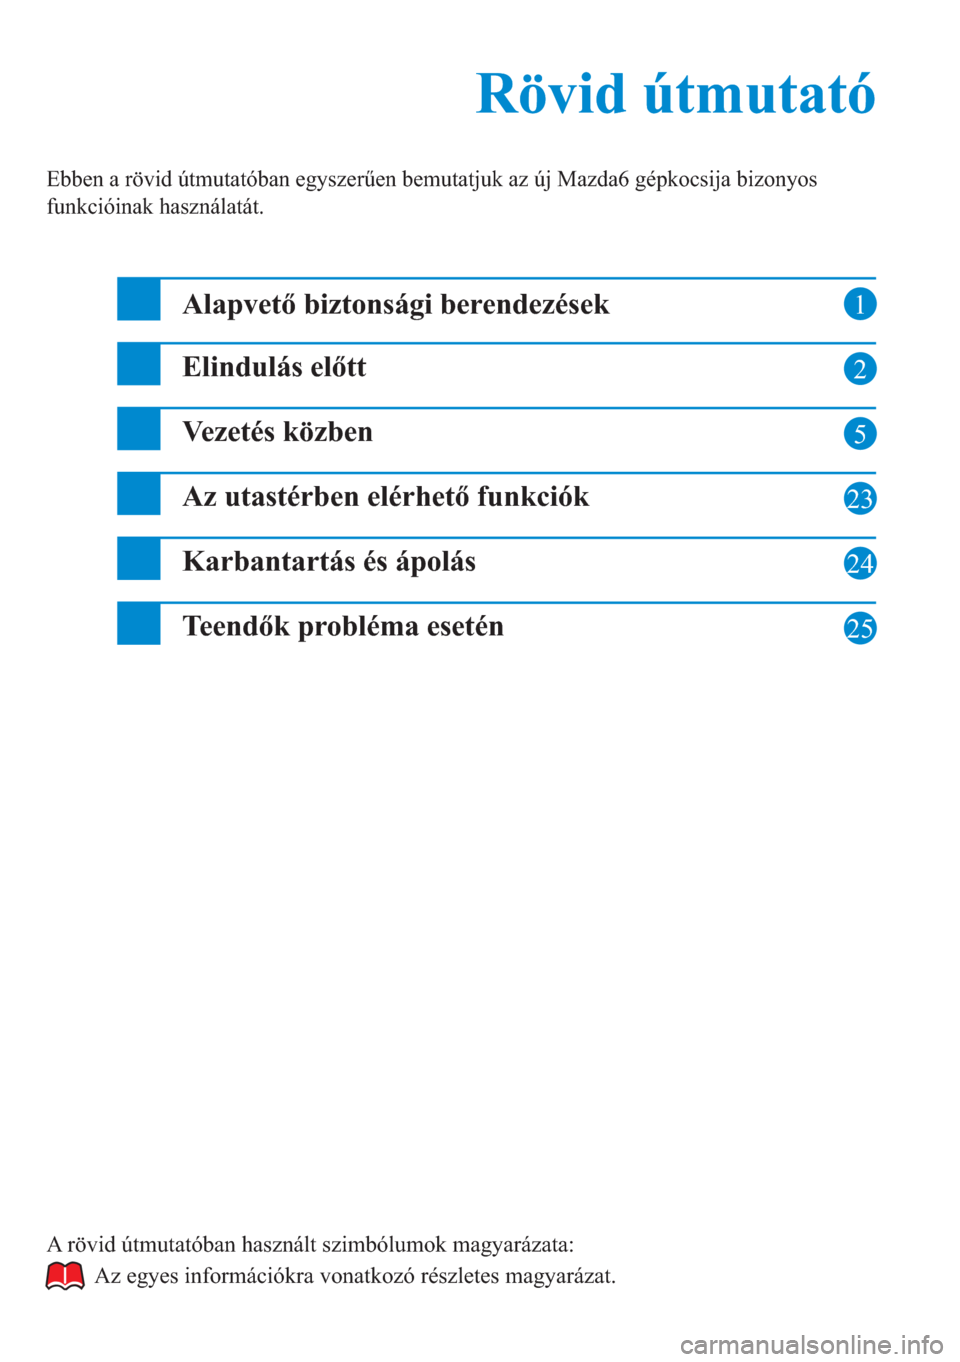 MAZDA MODEL 6 2015  Rövid útmutató (in Hungarian) 1
2
5
23
24
Rövid útmutató Rövid útmutató
Ebben a rövid útmutatóban egyszerűen bemutatjuk az új Mazda6 gépkocsija bizonyos 
funkcióinak használatát.
Alapvető biztonsági berendezések
